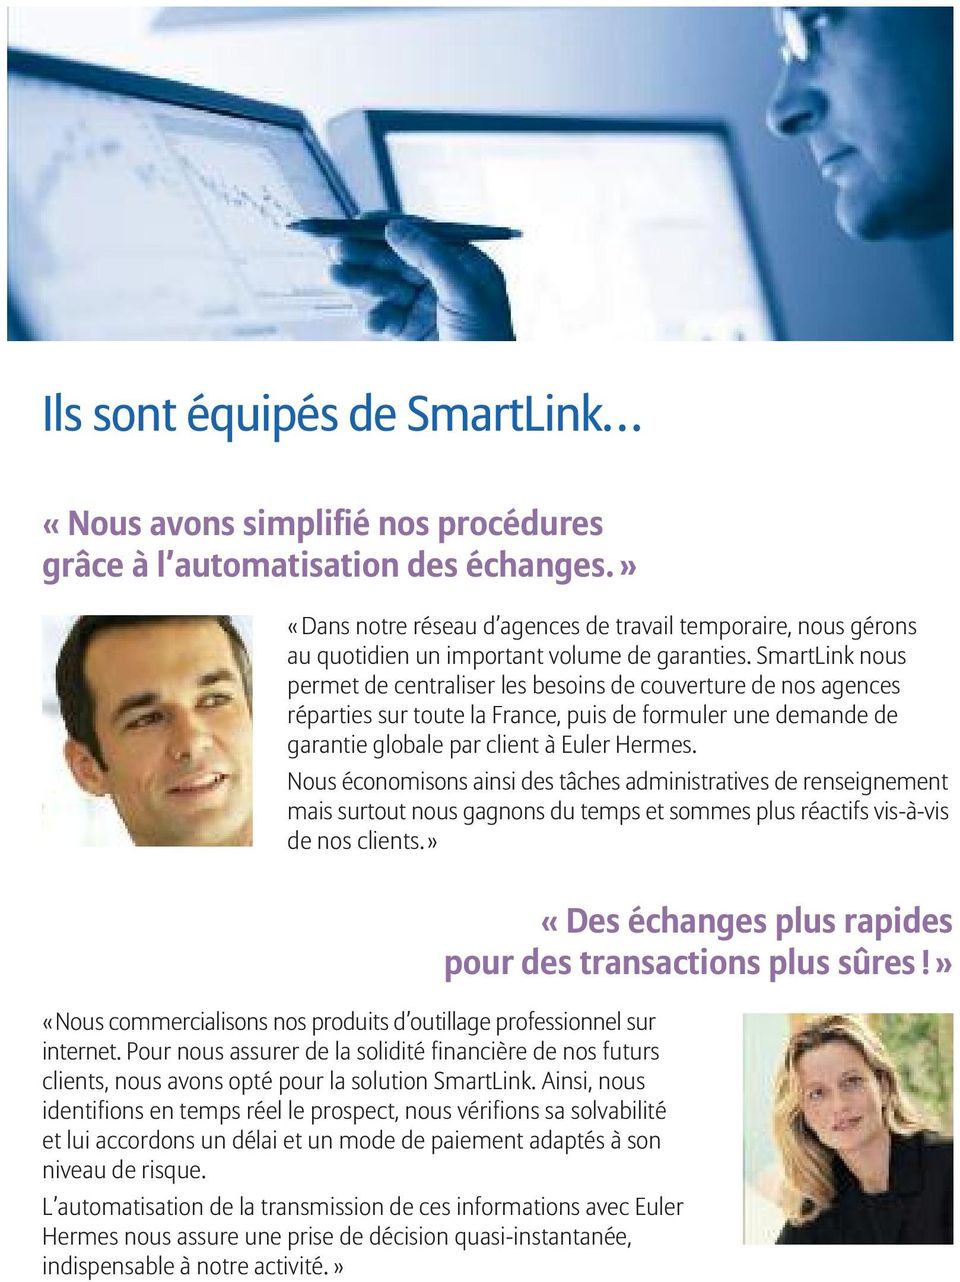 SmartLink nous permet de centraliser les besoins de couverture de nos agences réparties sur toute la France, puis de formuler une demande de garantie globale par client à Euler Hermes.